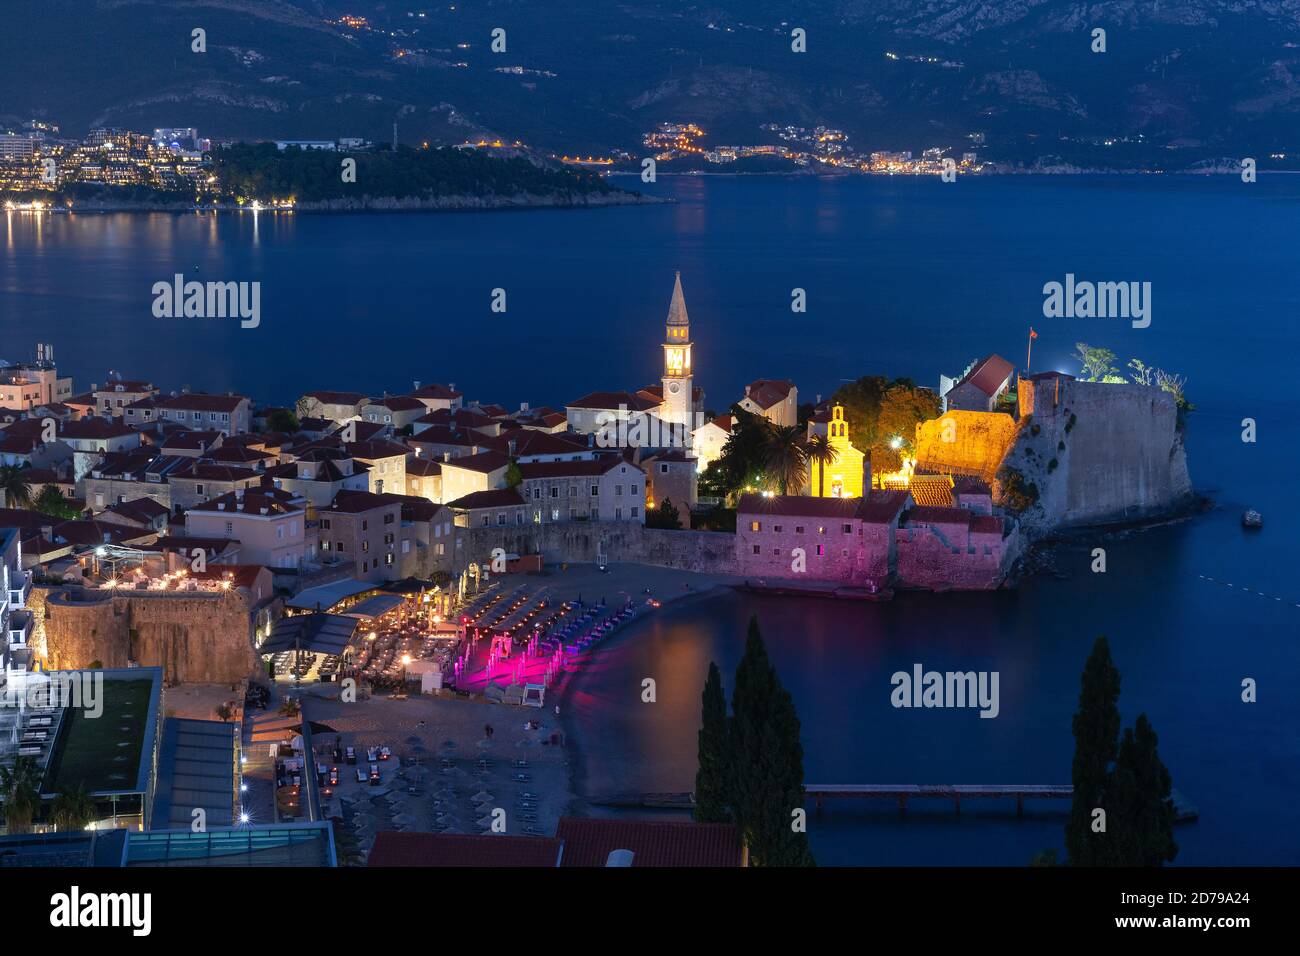 Vue aérienne de nuit saint Ivan et Sainte Trinité églises dans la vieille ville de Budva ville monténégrine sur la mer Adriatique, le Monténégro Banque D'Images